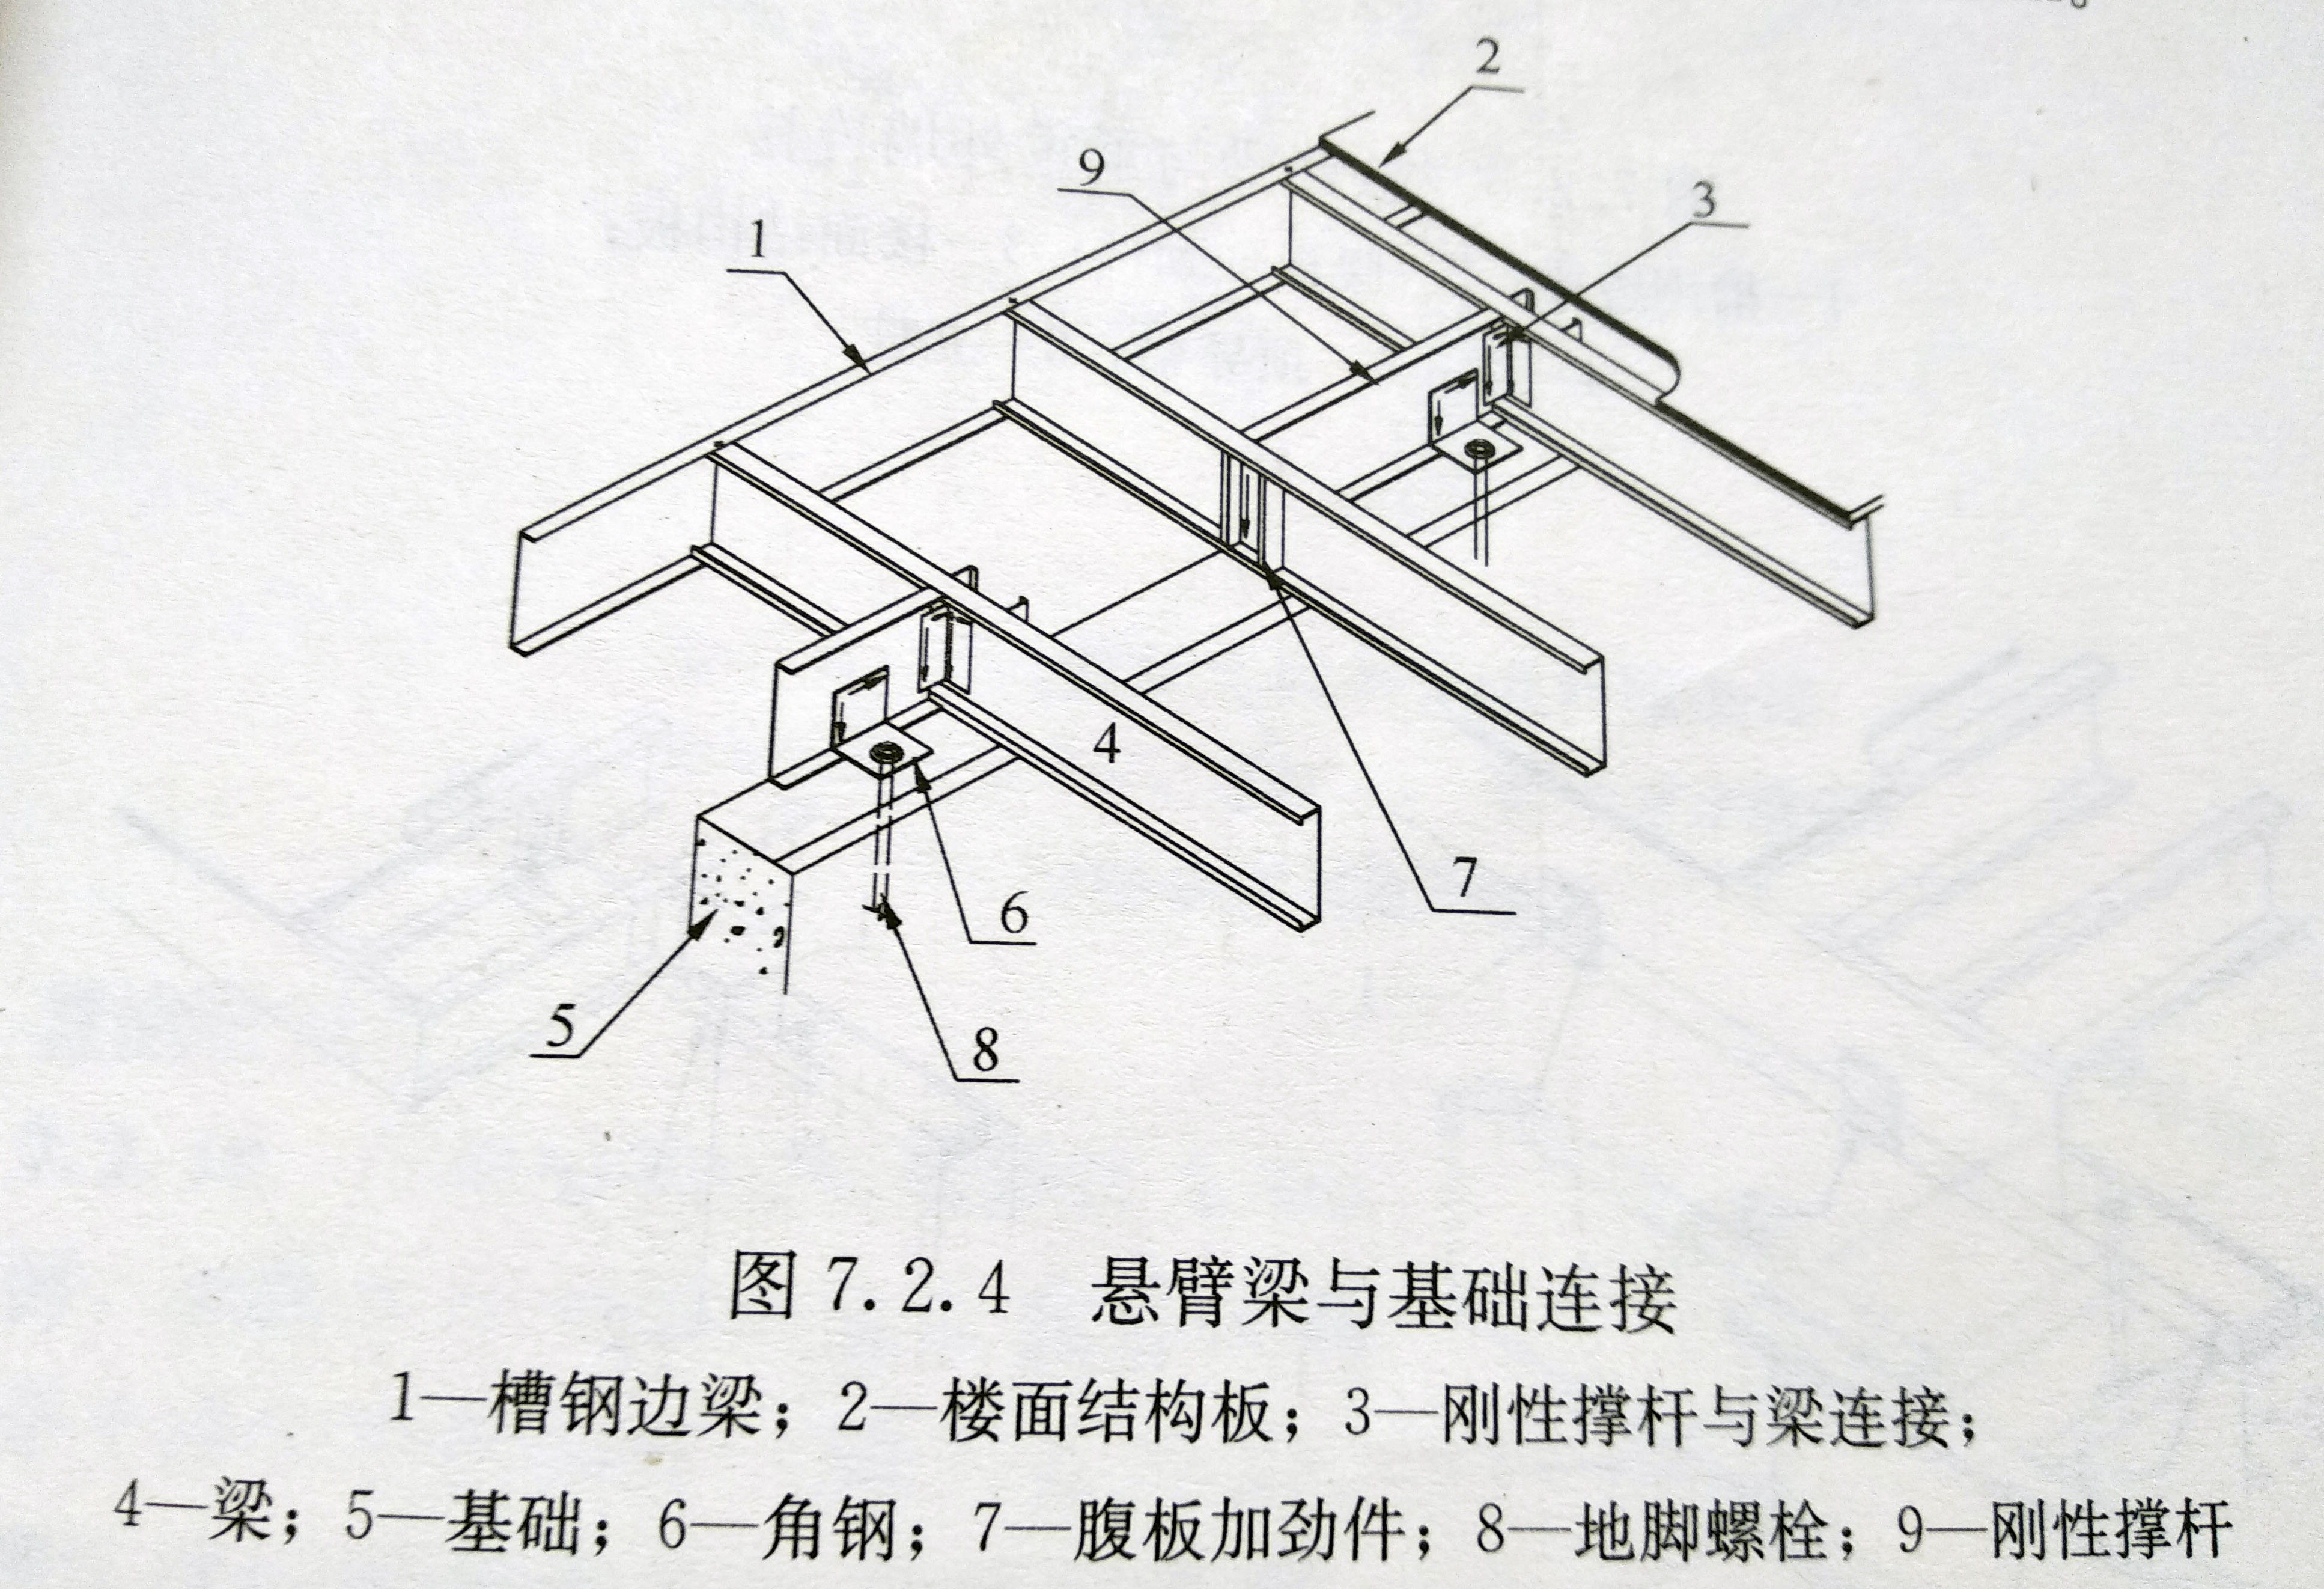 4,悬臂梁与基础连接采用图4所示的构造时,地脚螺栓规格和布置形式与本